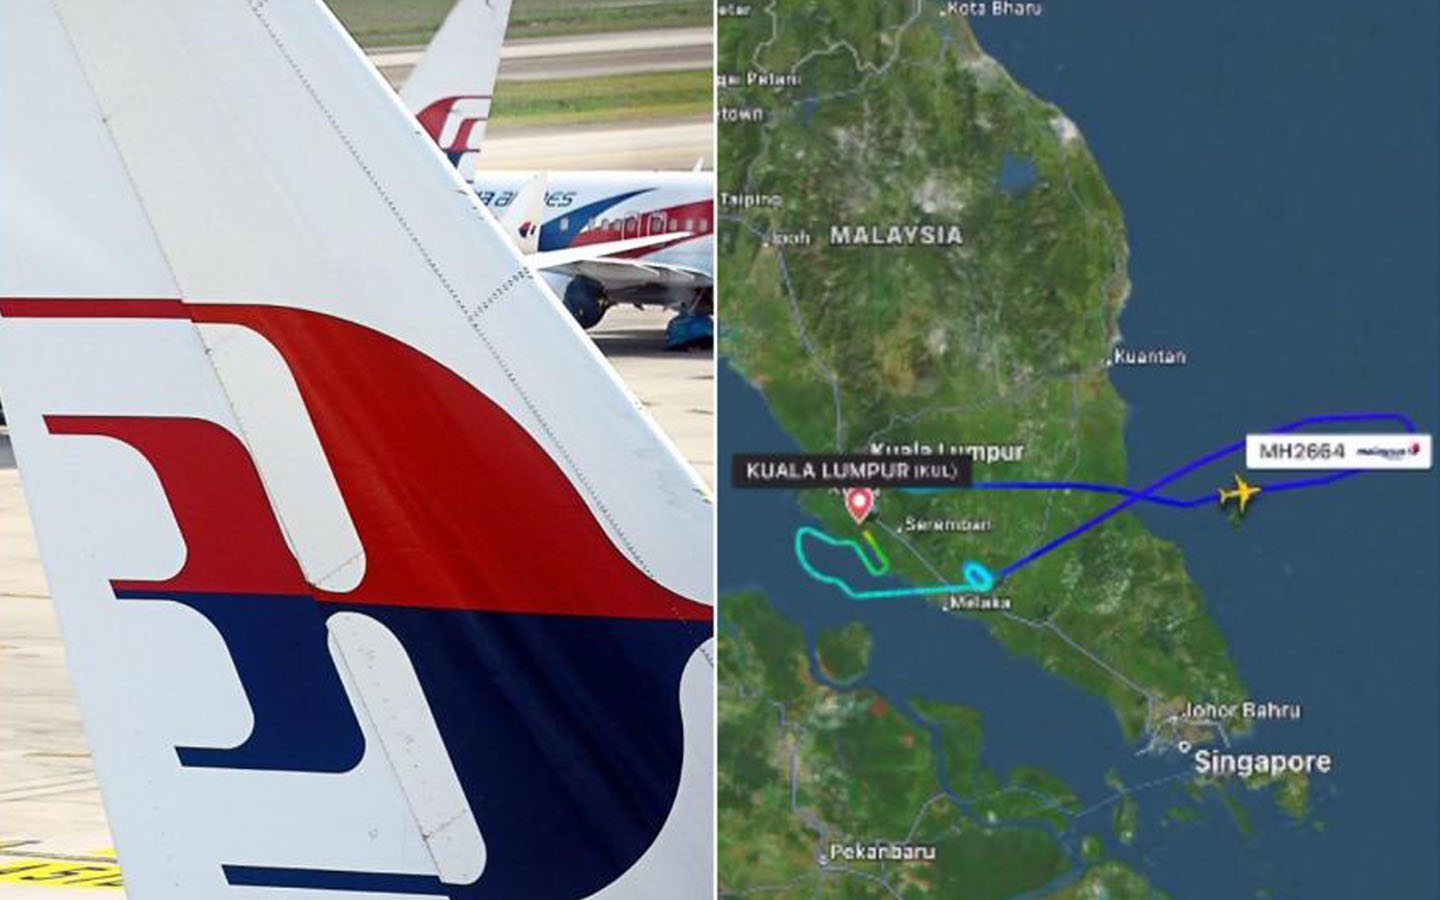 Cerita Halimah Penumpang Pesawat Malaysia Airlines yang Mengalami Peristiwa Aneh